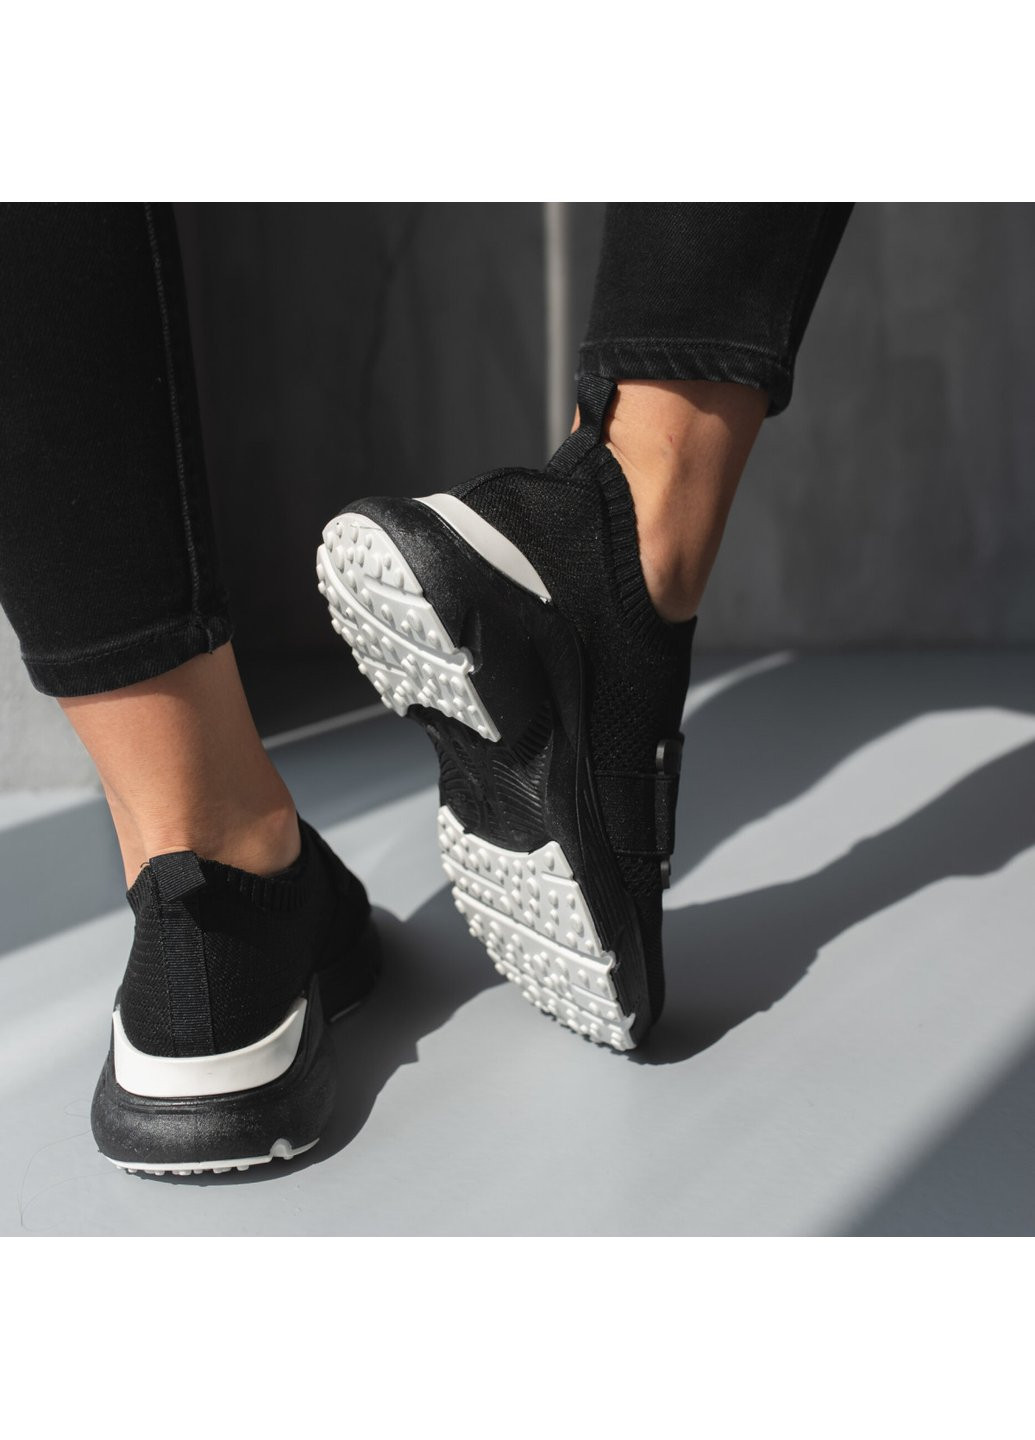 Черные демисезонные кроссовки женские bodhi 3704 36 23,5 см черный Fashion